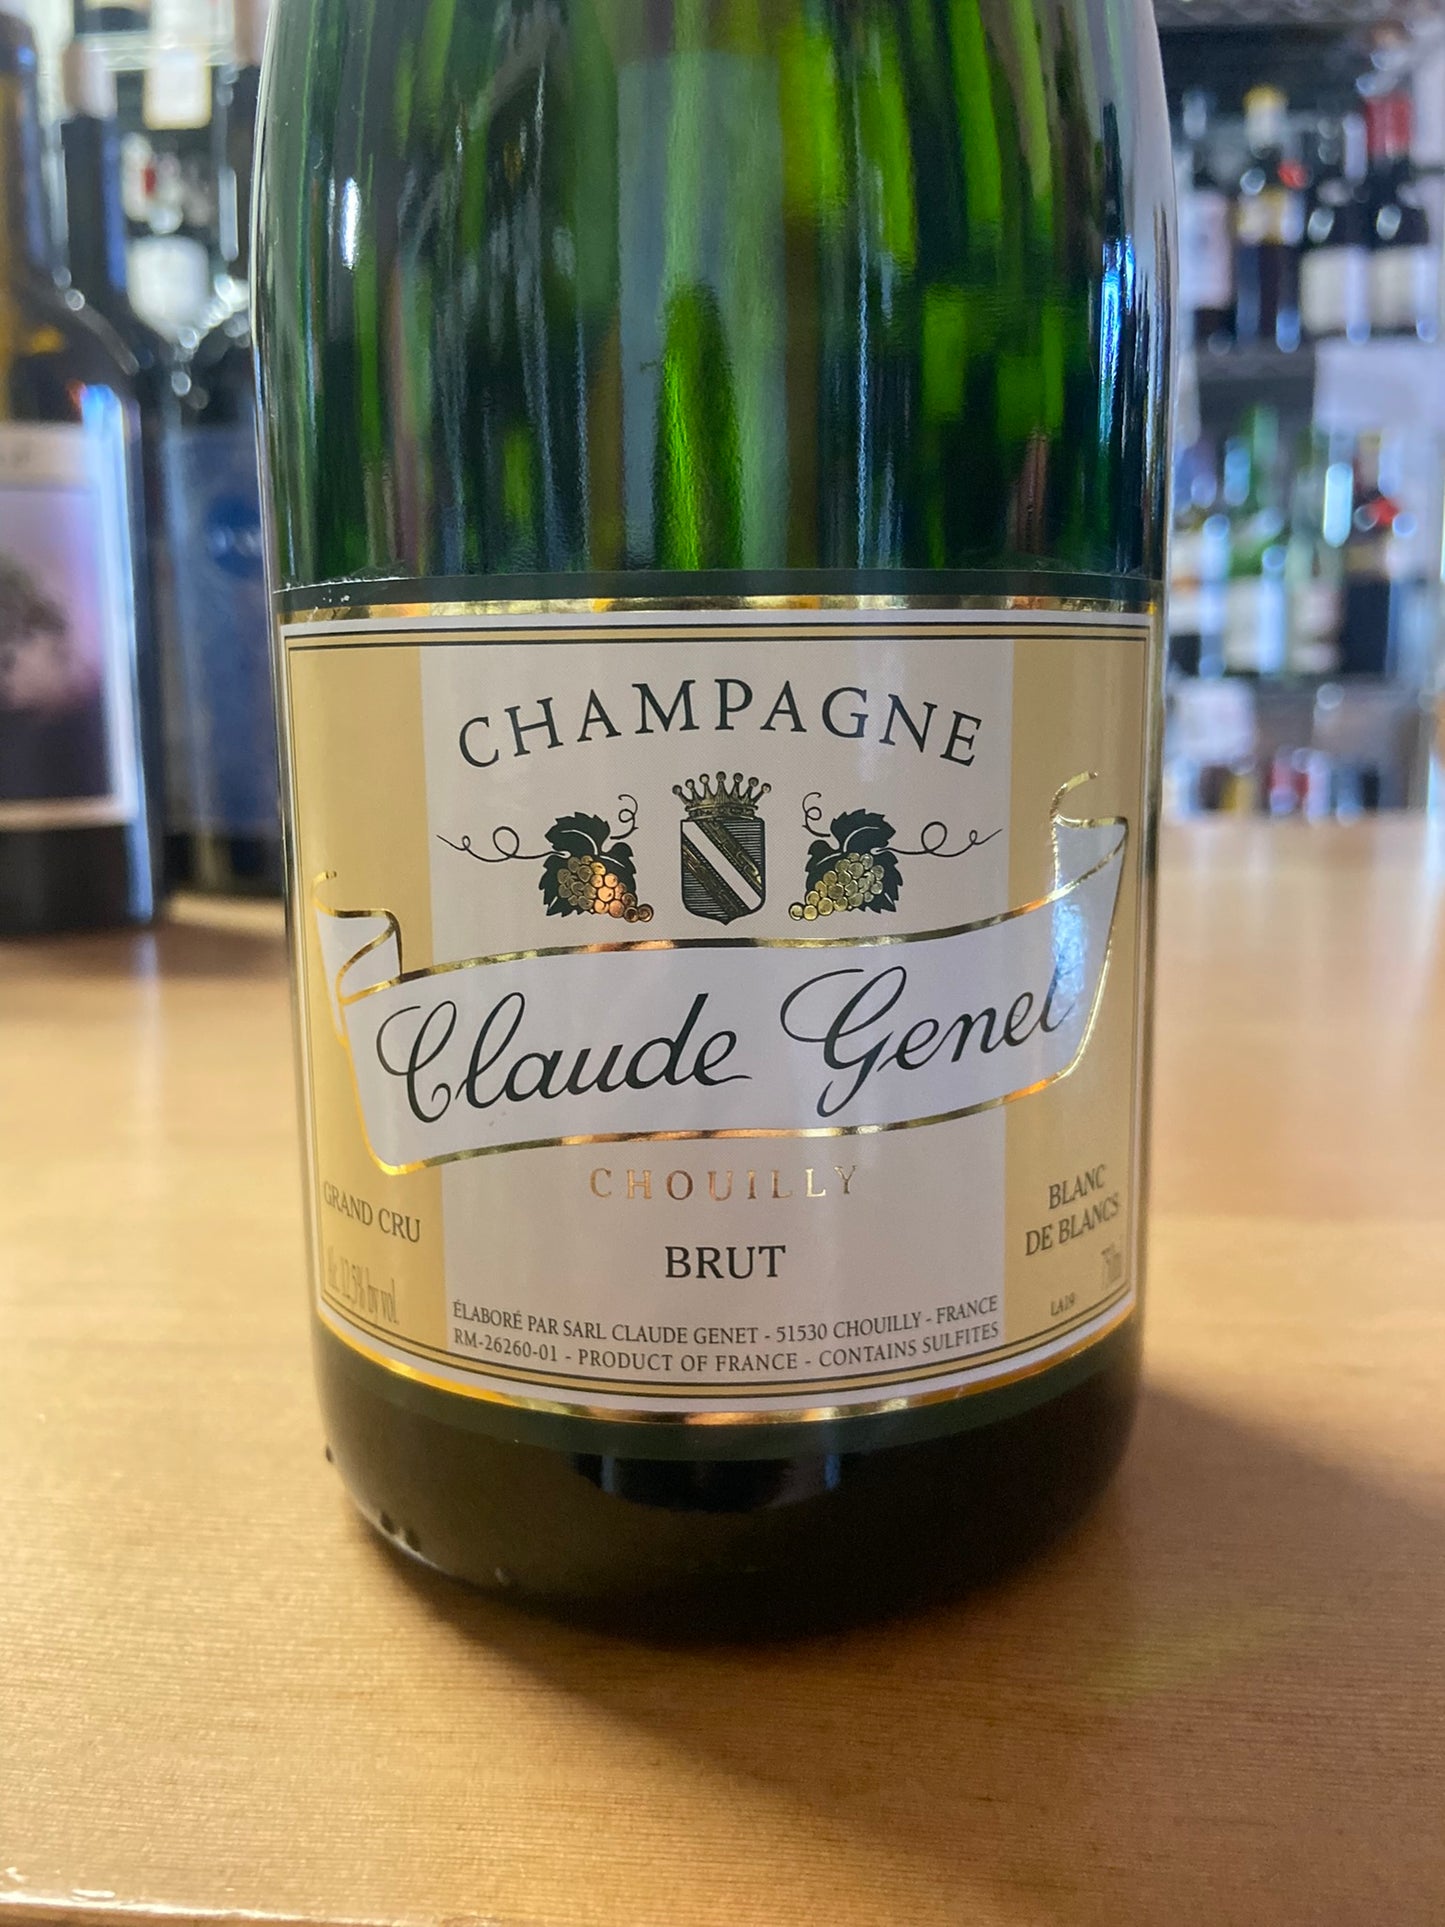 CLAUDE GENET NV Champagne 'Chouillu Brut' (Champagne, France)